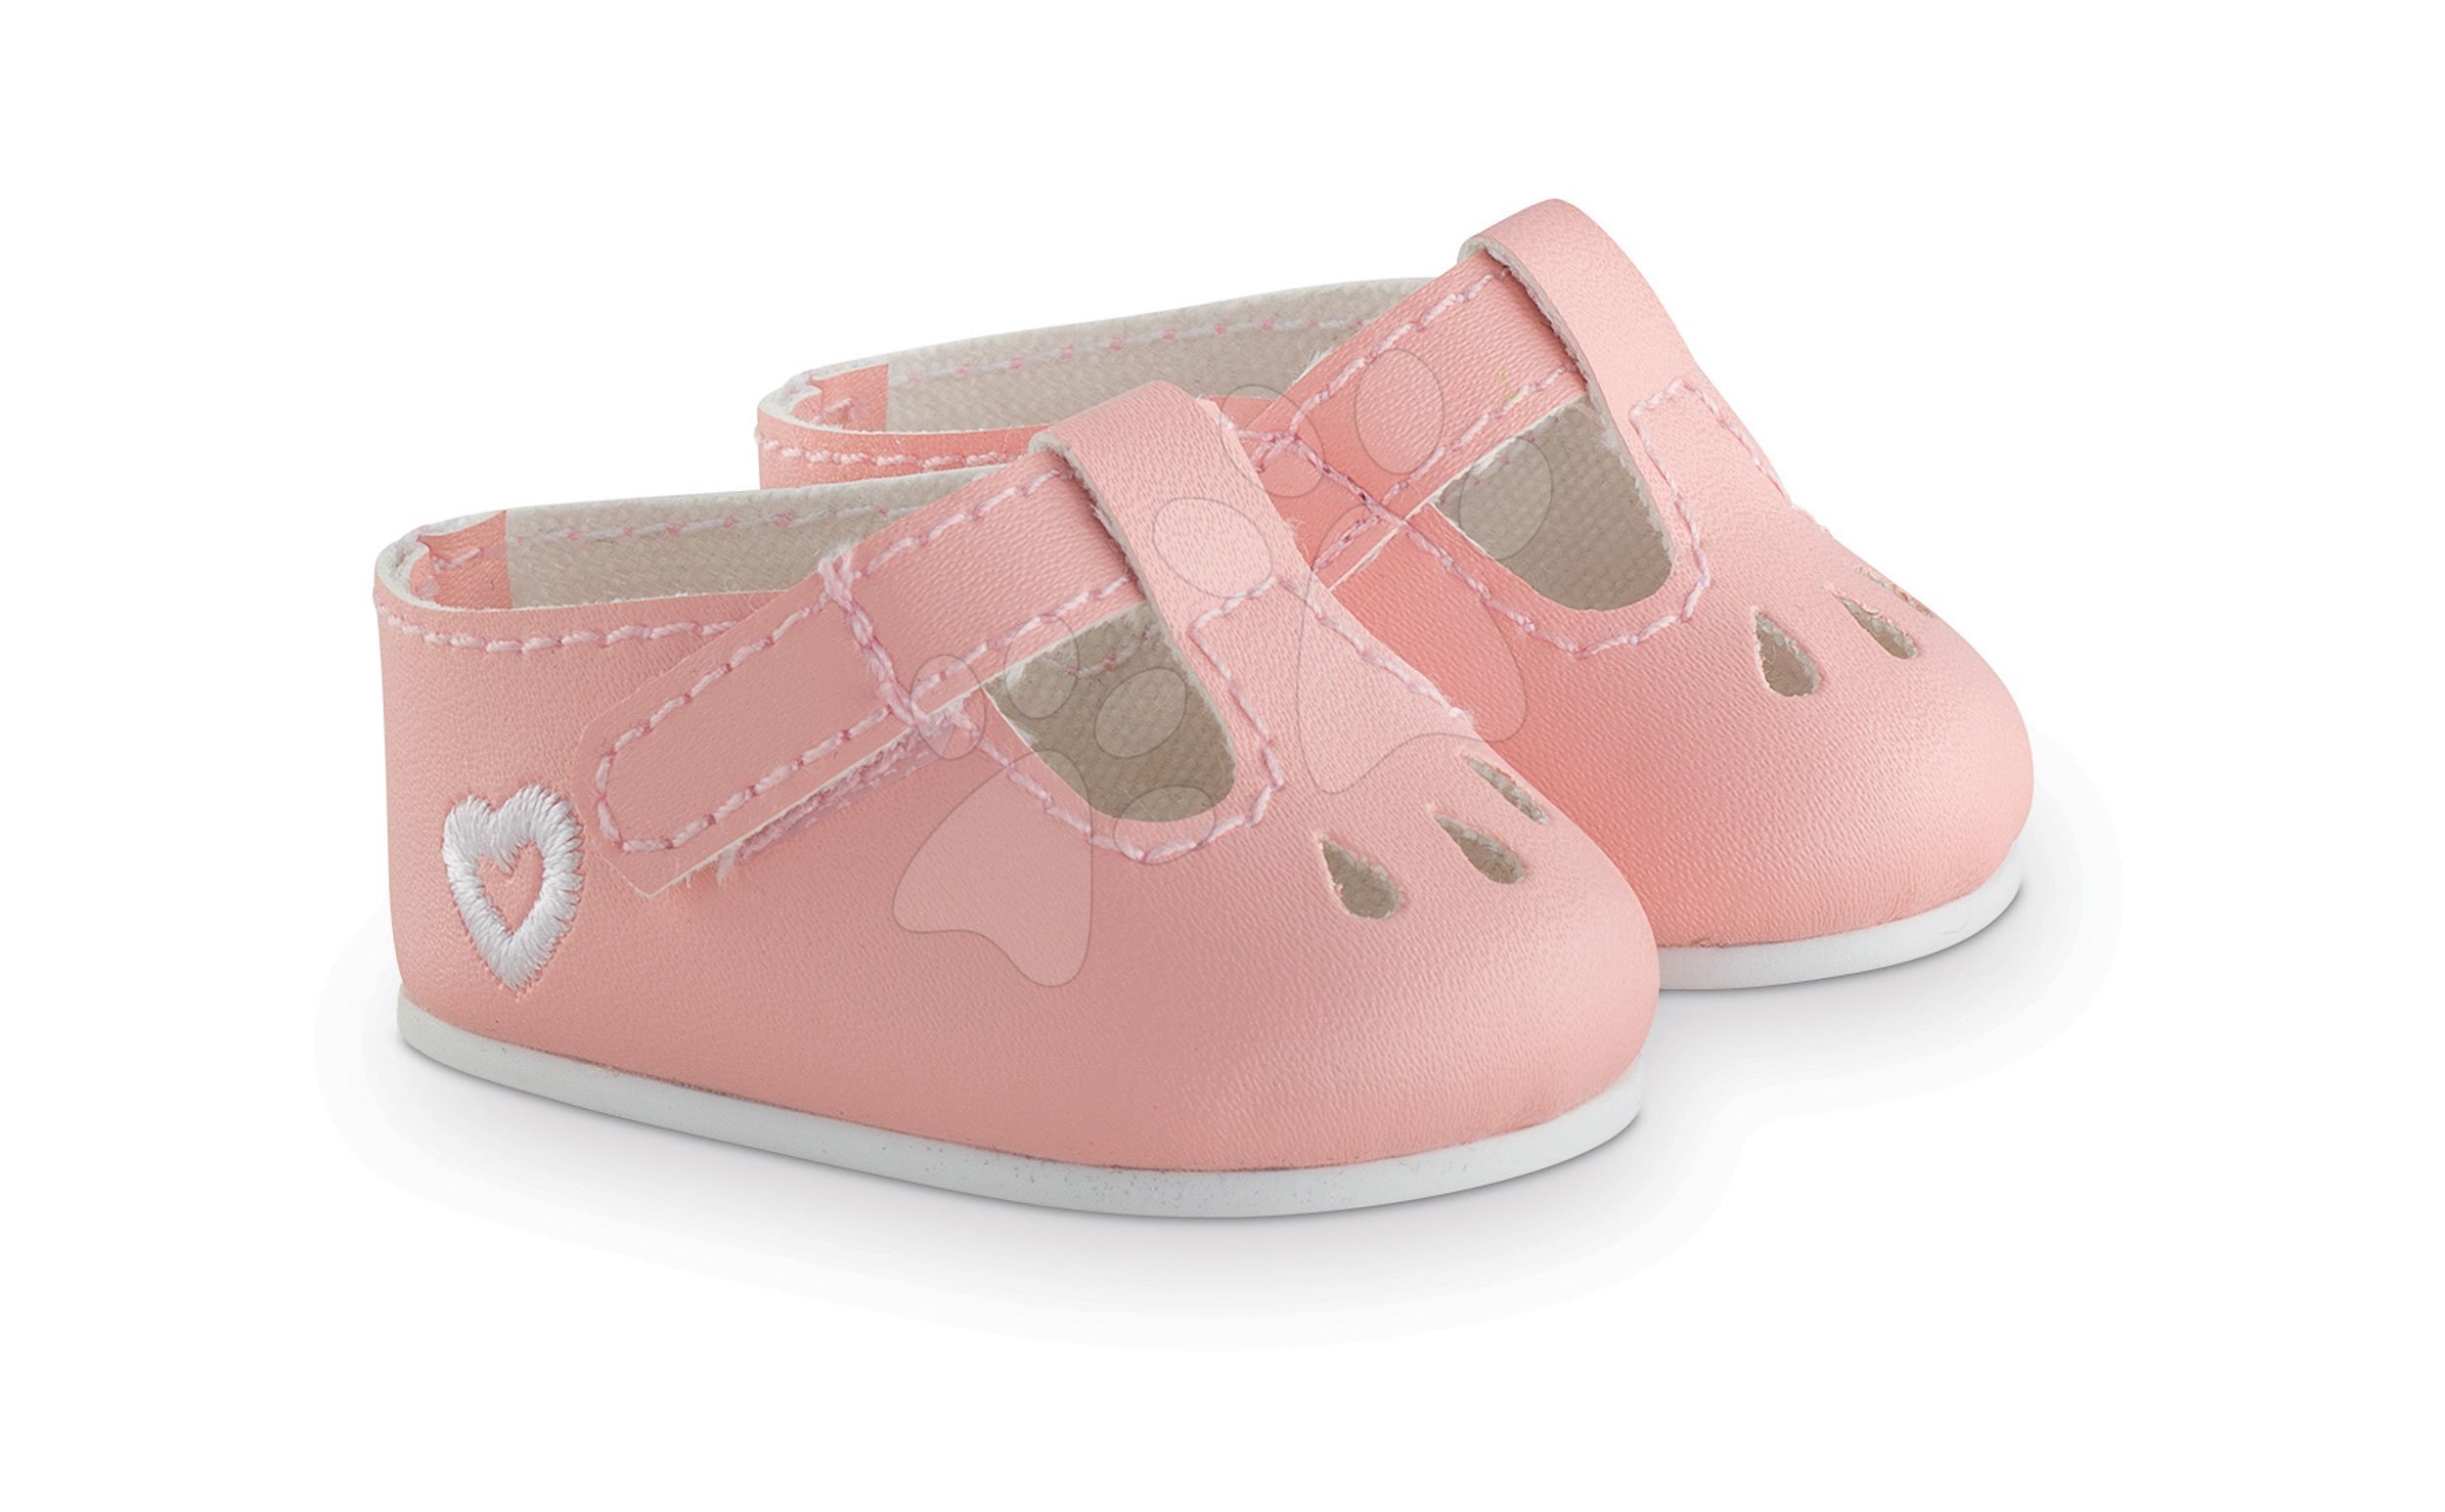 Cipellők Ankle Strap Shoes Pink Mon Grand Poupon Corolle 36 cm játékbabának rózsaszín 3 évtől Baba játék webáruház - játék rendelés online